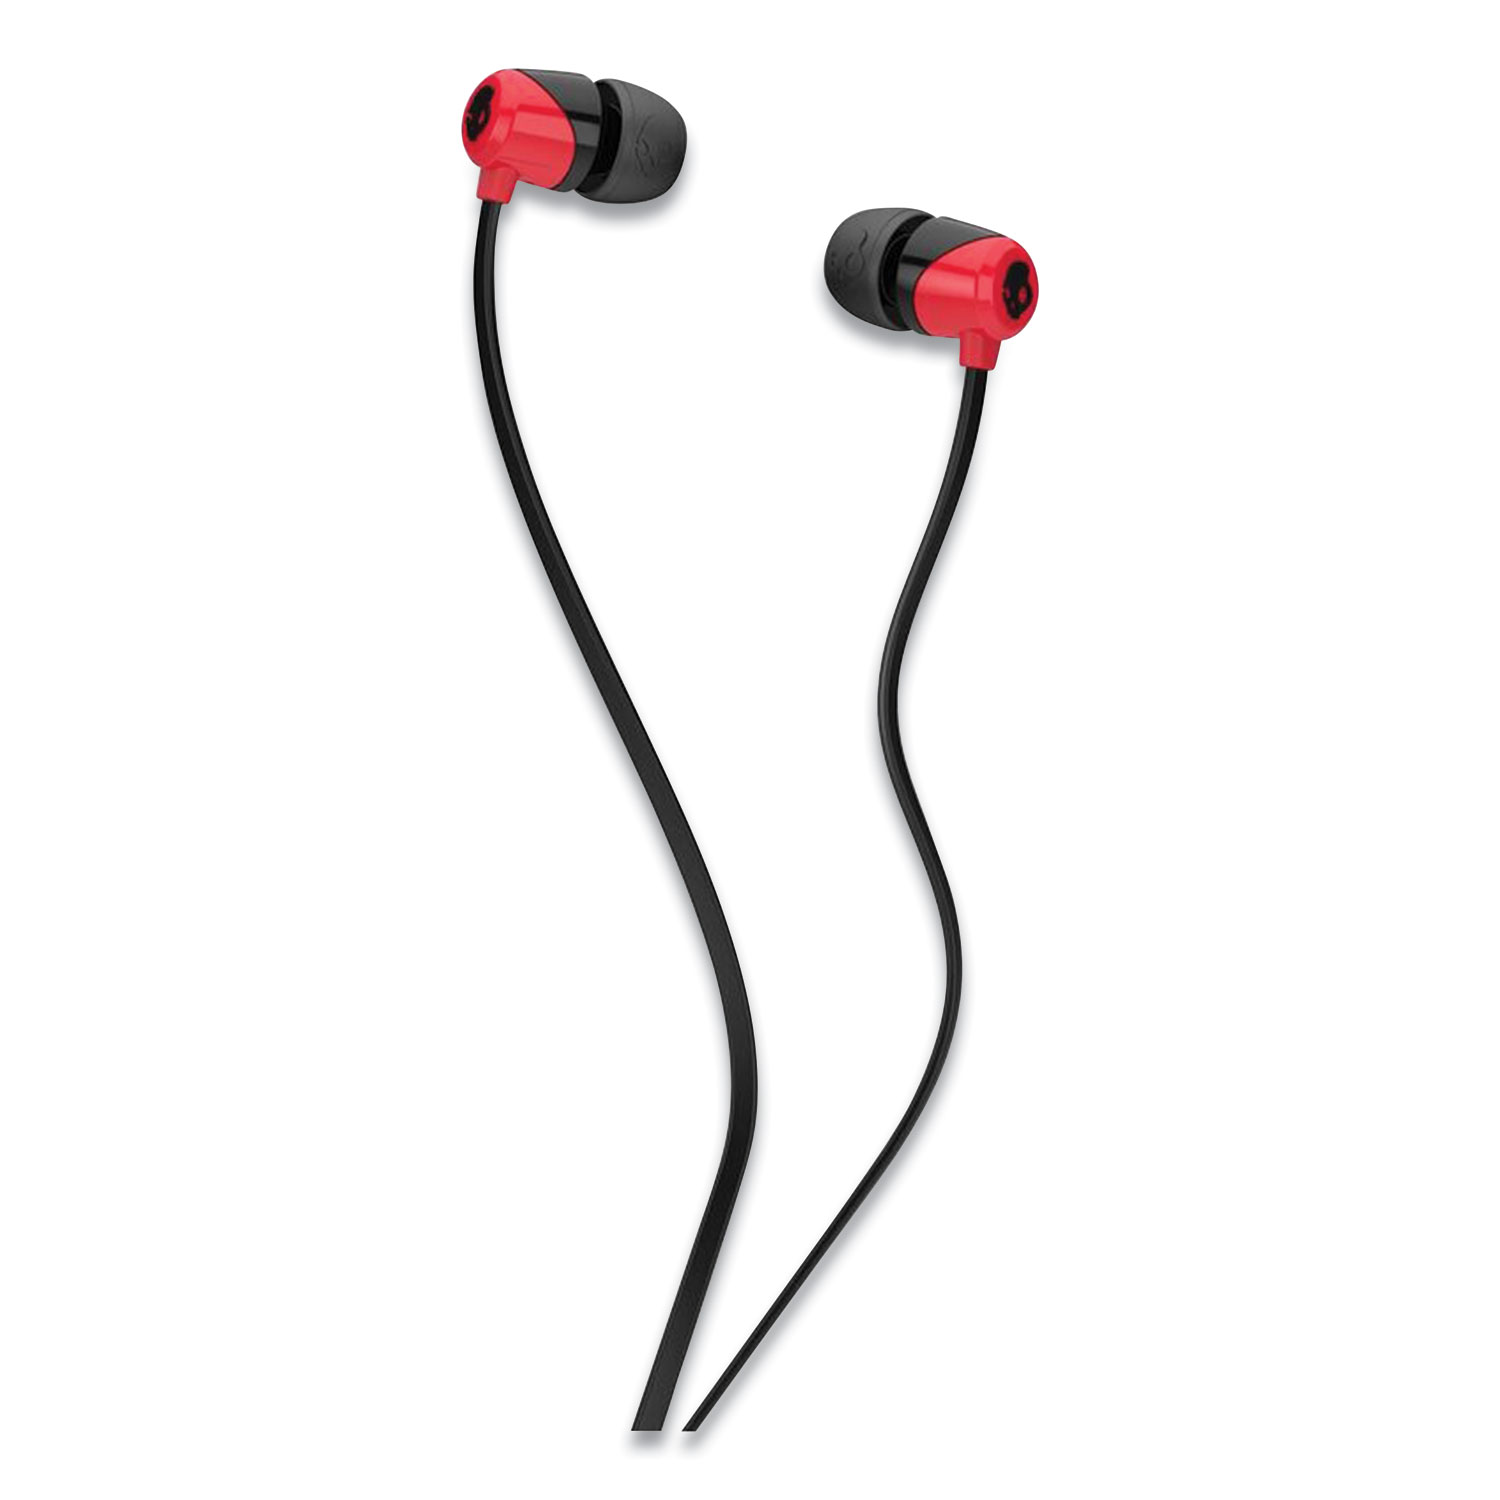  Skullcandy S2DUHZ-335 Jib In-Ear Headphones, Red (SKA2719430) 